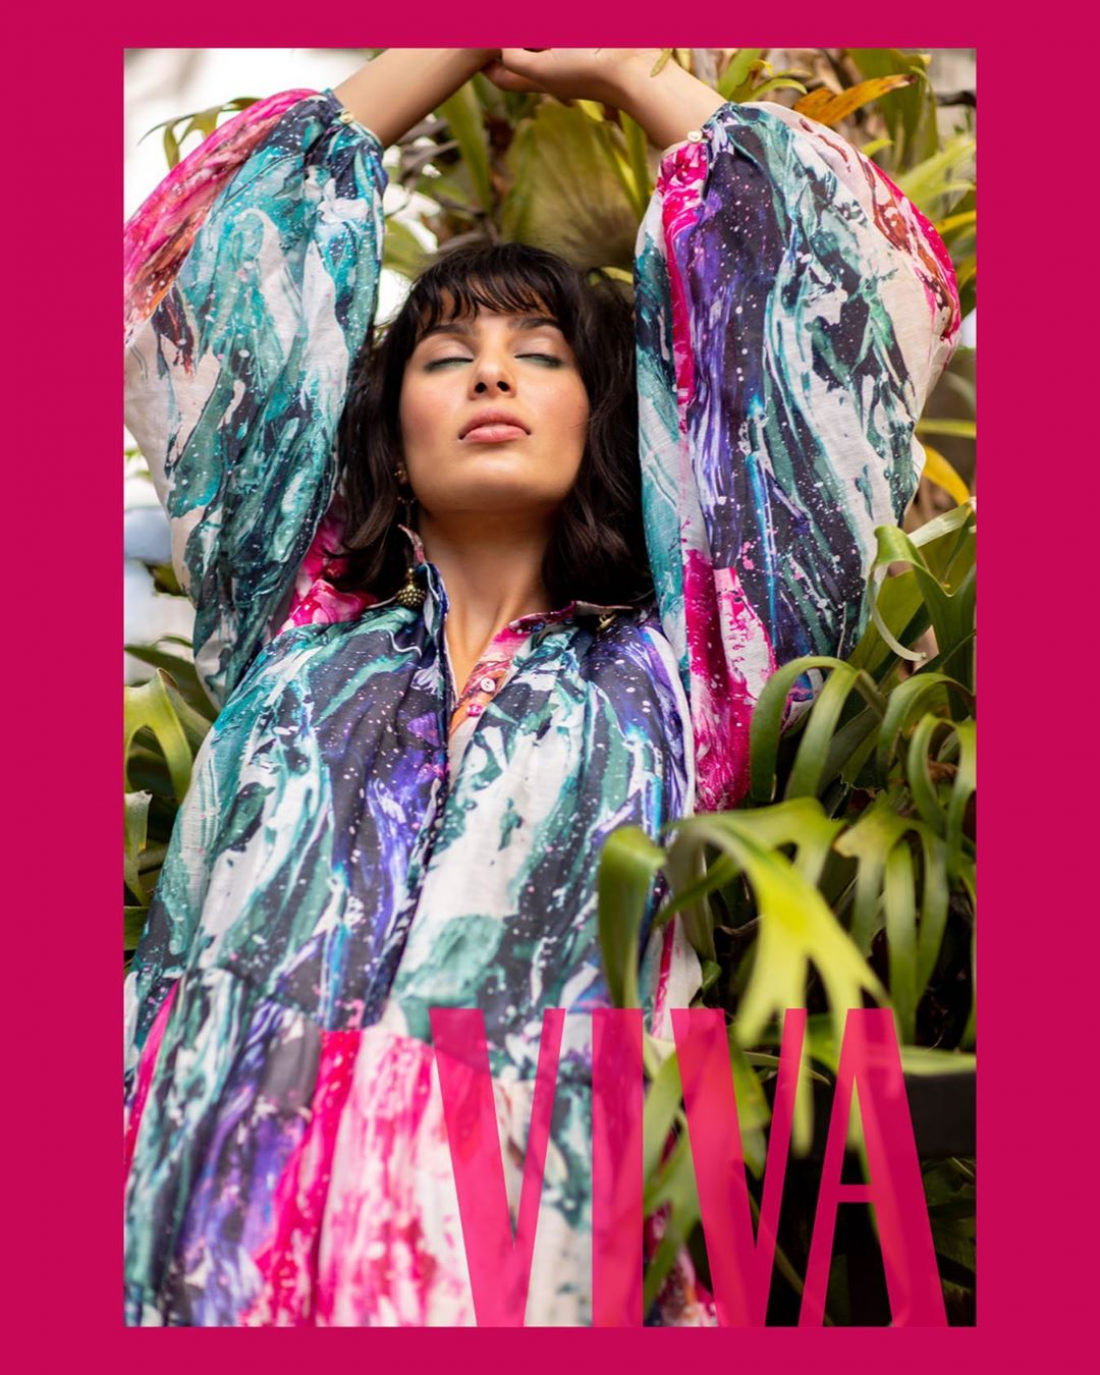 Ria photographed for Viva Magazine by Babiche Martens in Aje Fashion Dan Ahwa